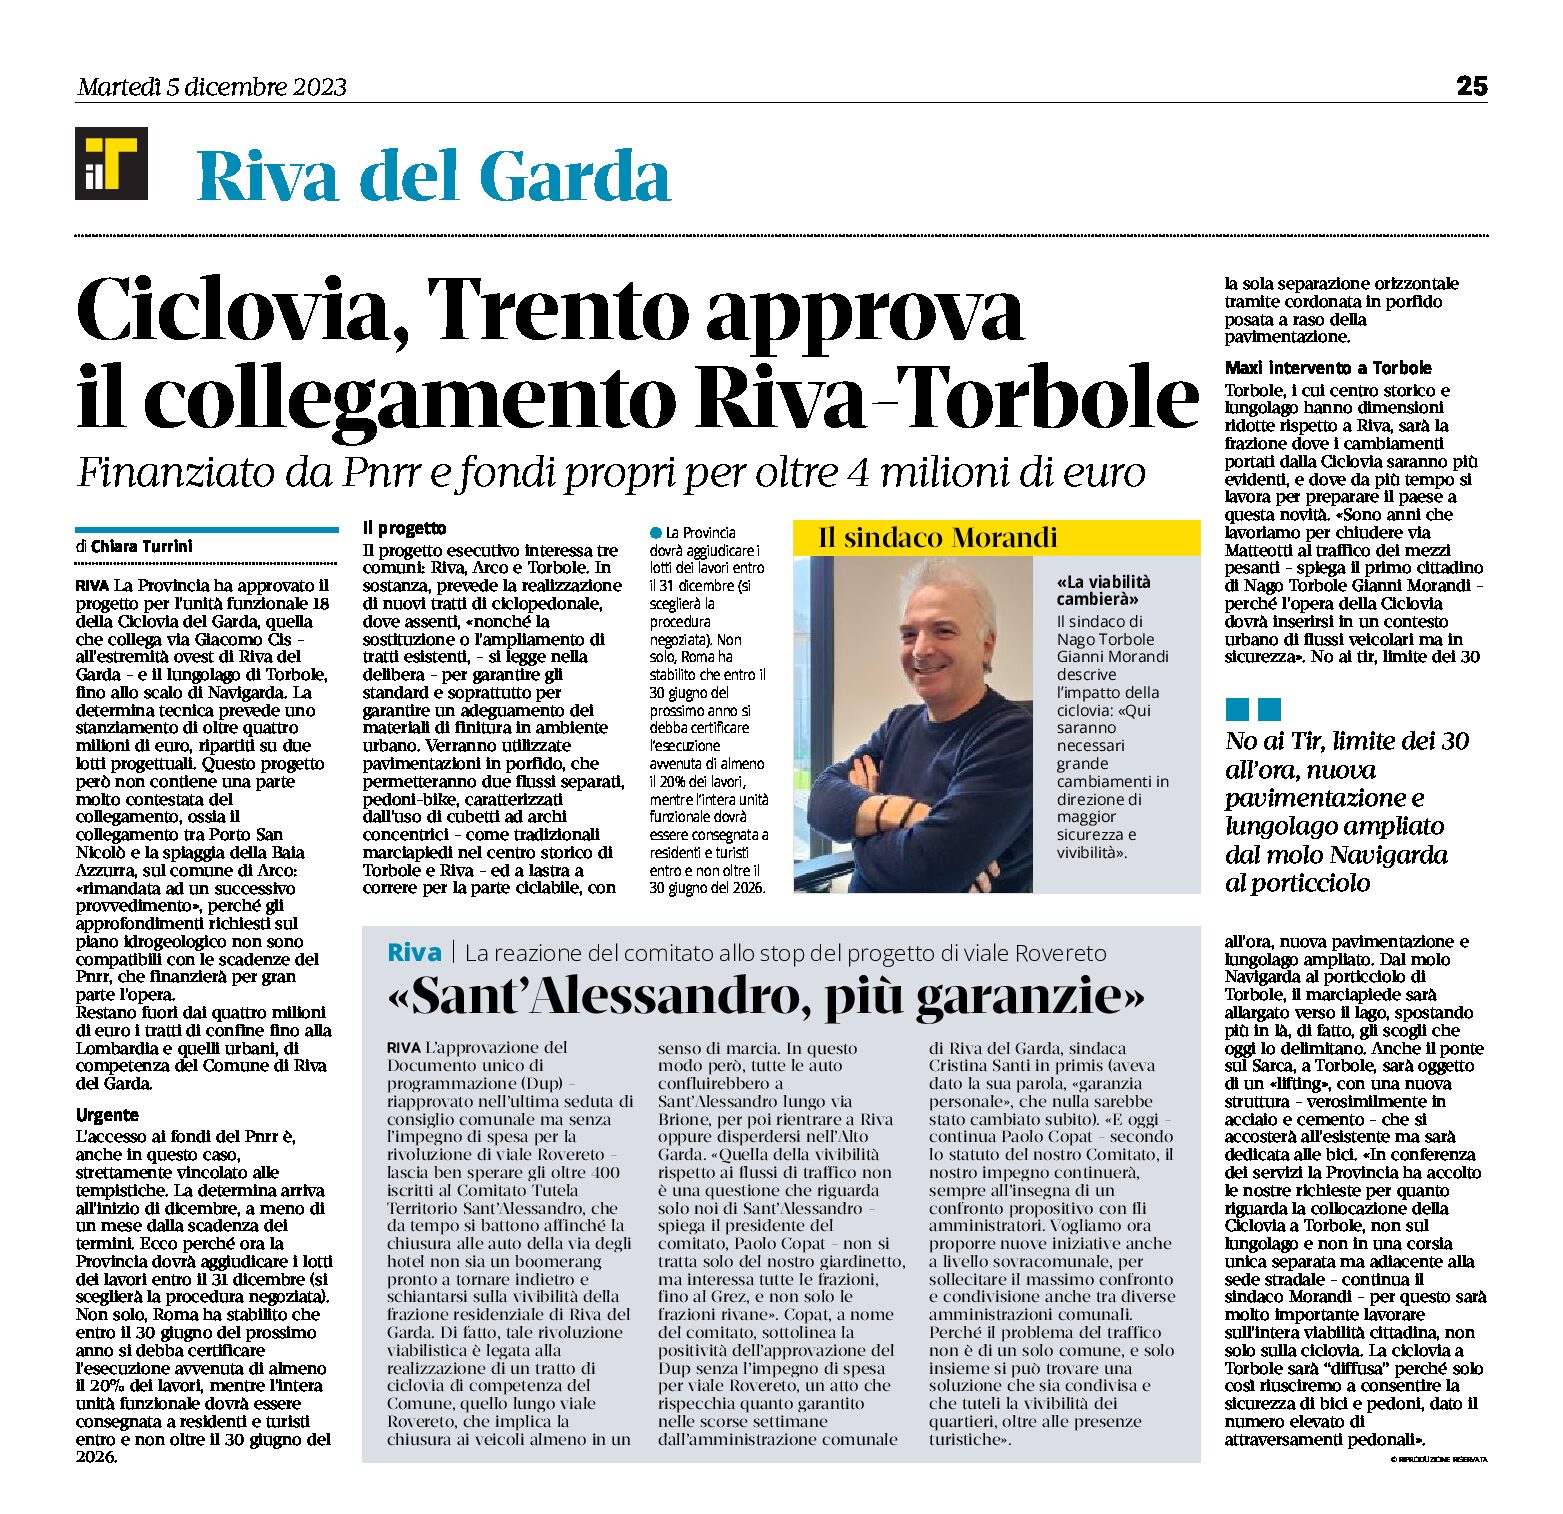 Ciclovia Garda: Trento approva il collegamento Riva-Torbole